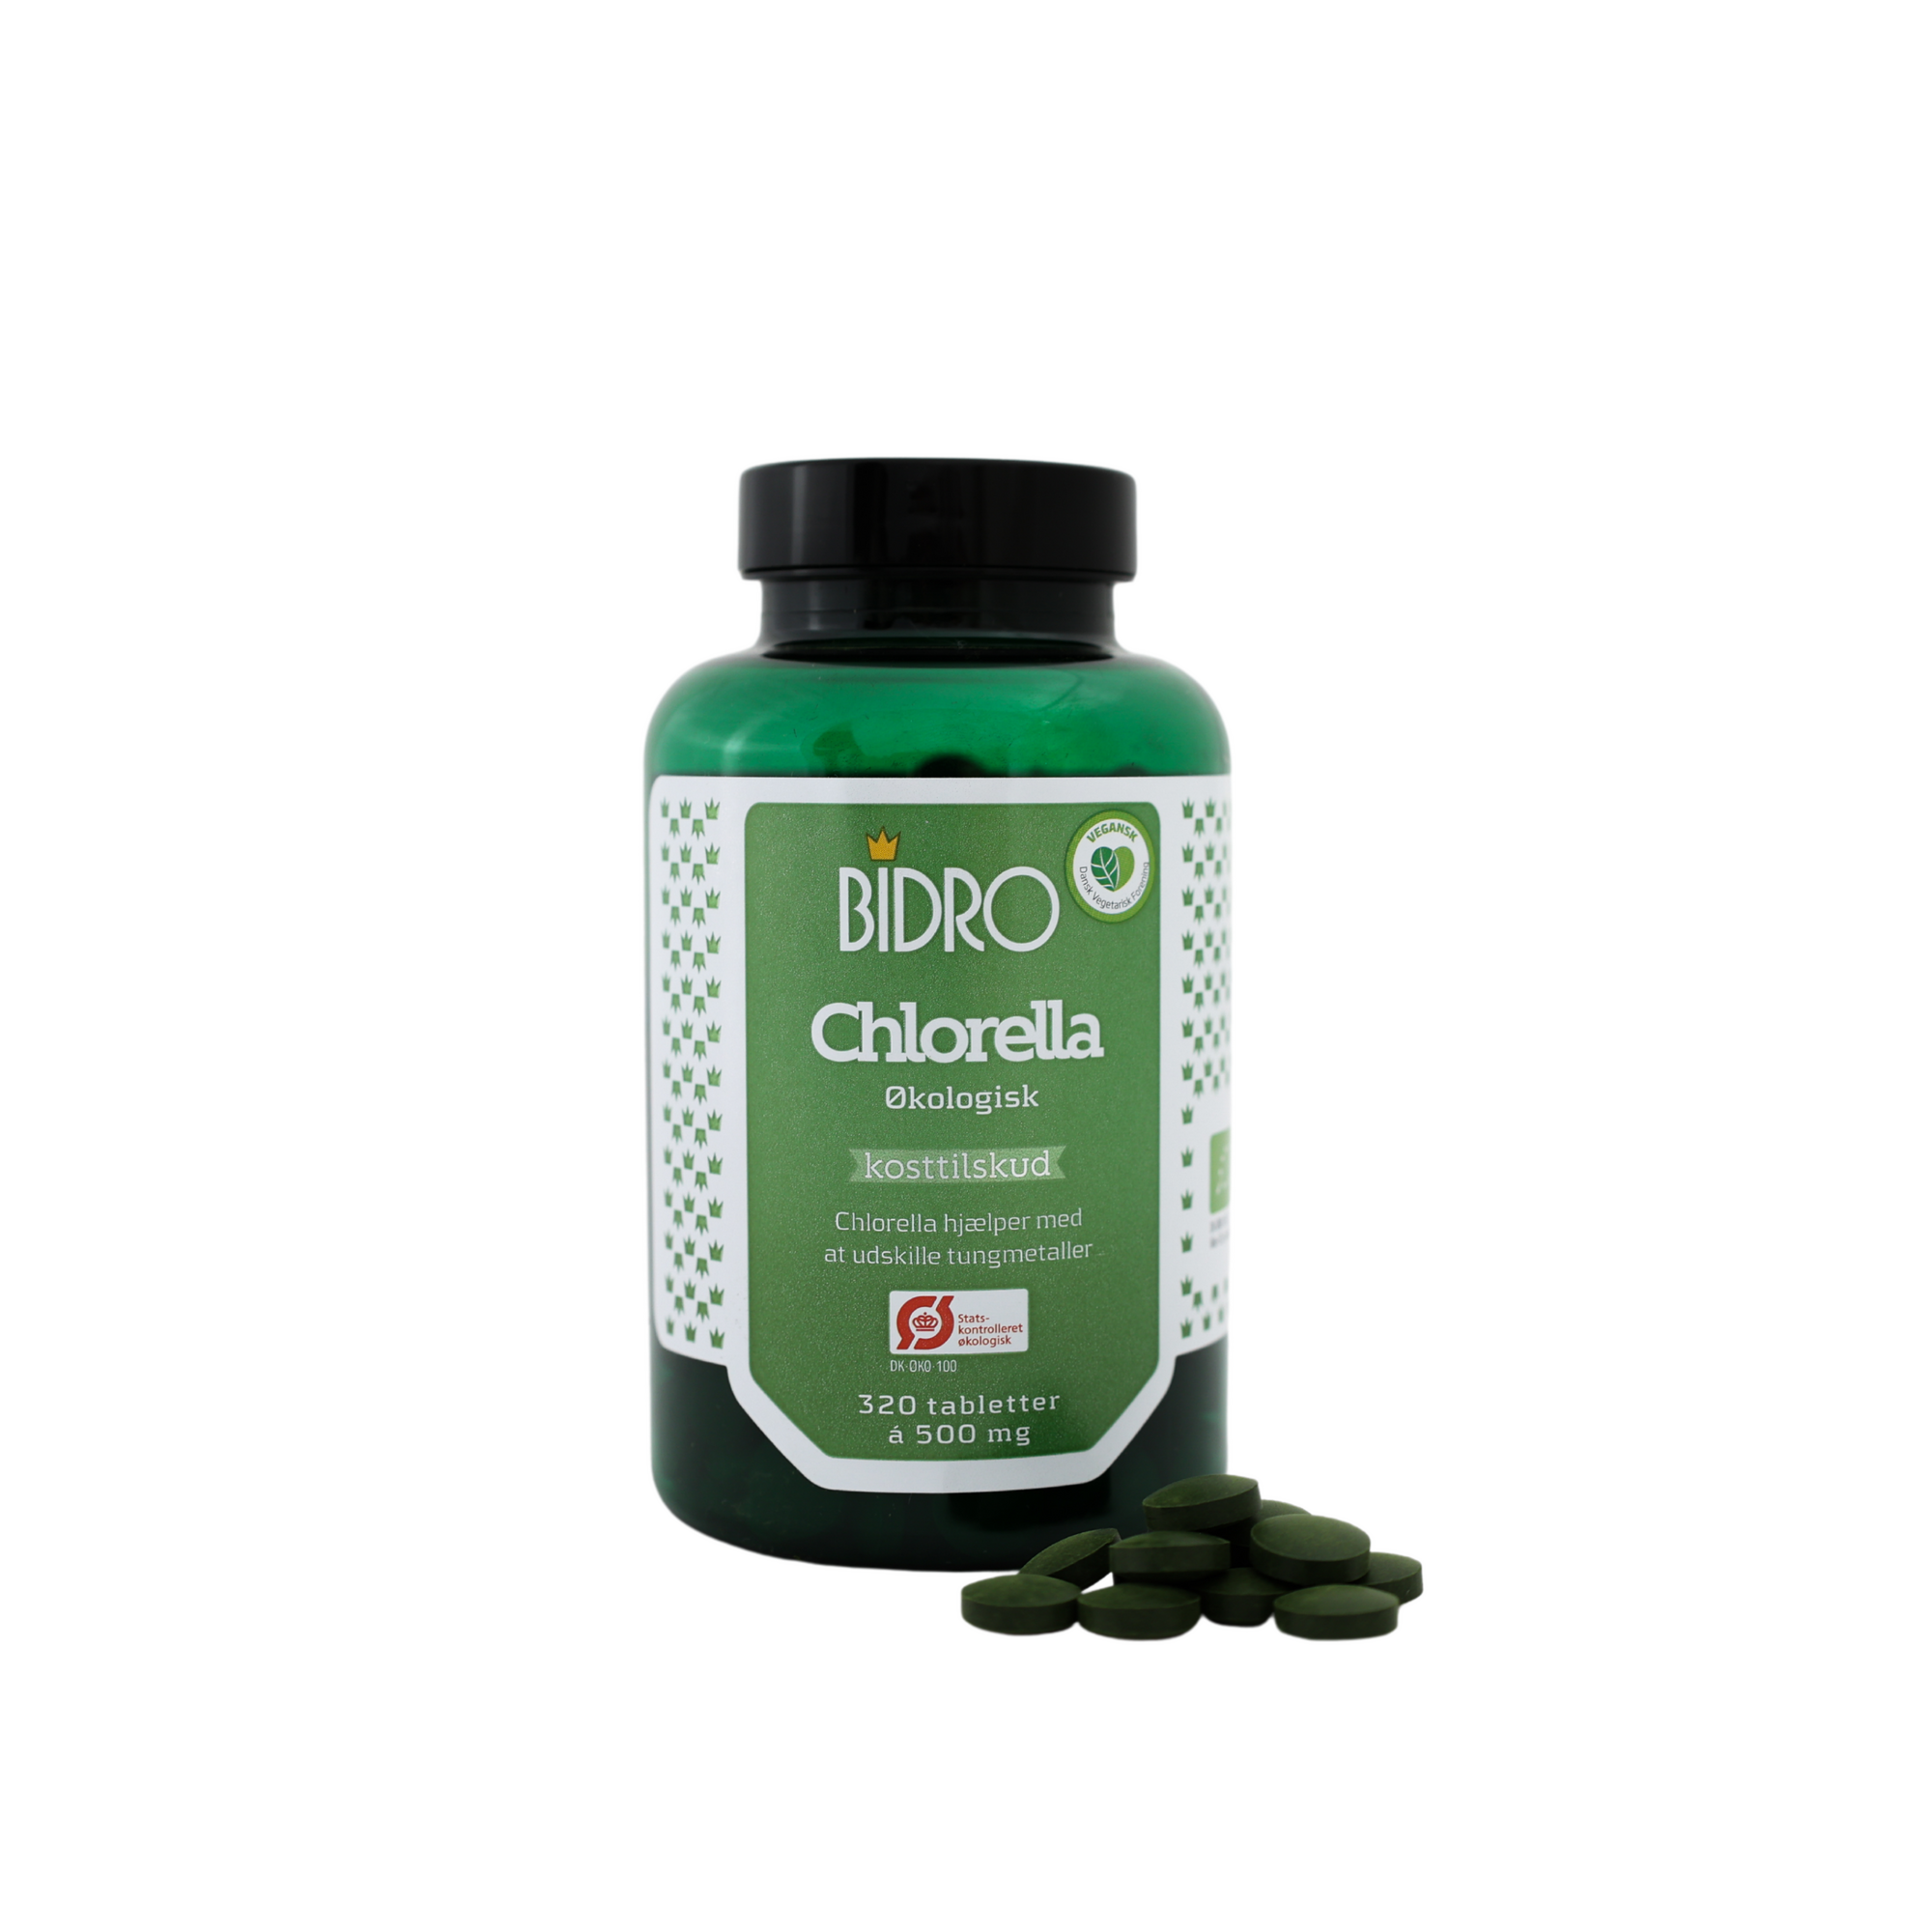 Se Bidro Chlorella økologisk - 320 tabletter hos Duft og Natur